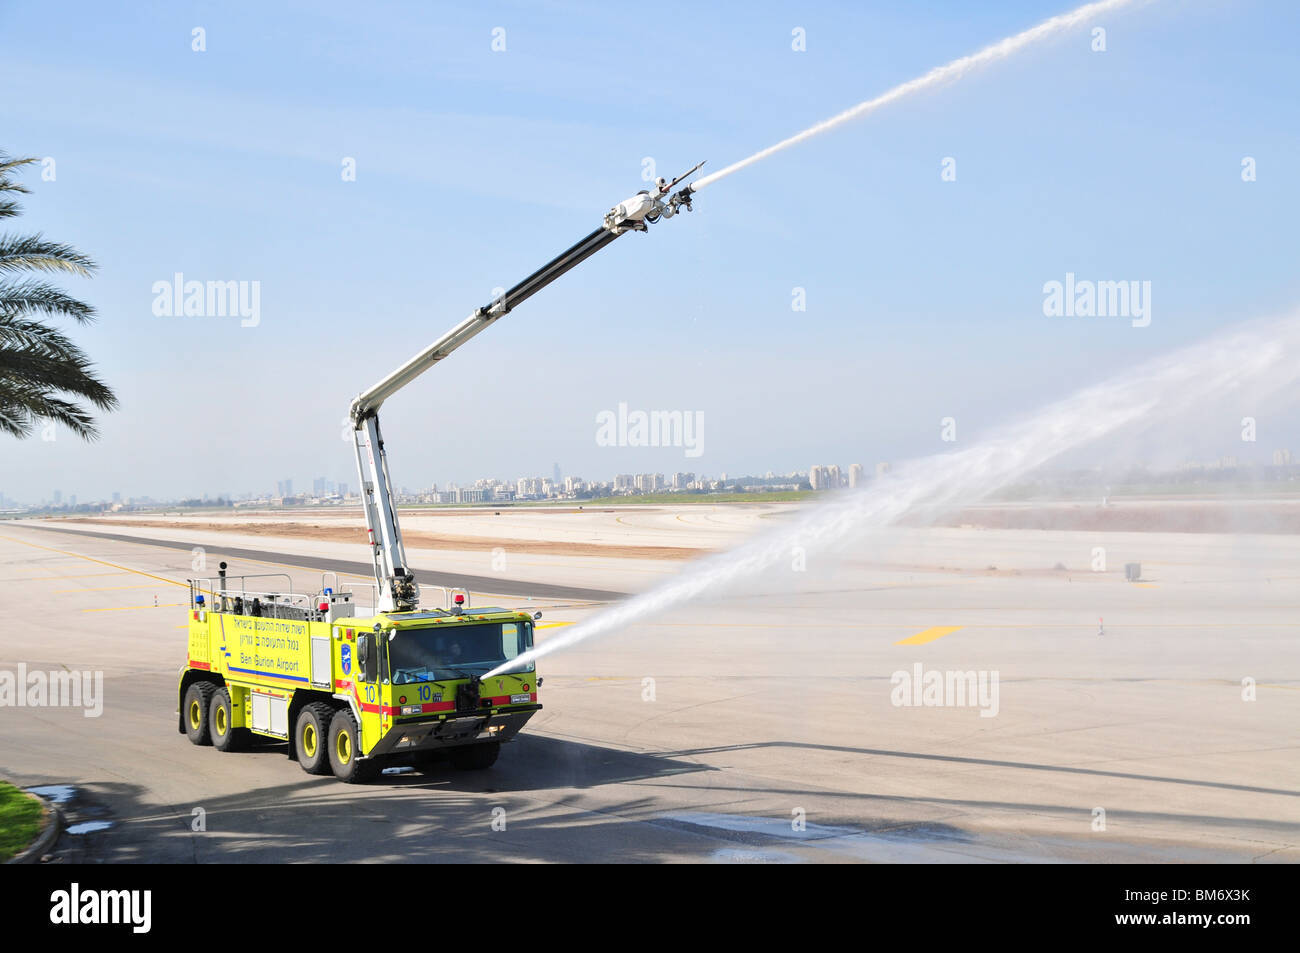 L'aéroport international Ben Gourion, Israël un camion d'incendie sur le prêt près de la piste Banque D'Images